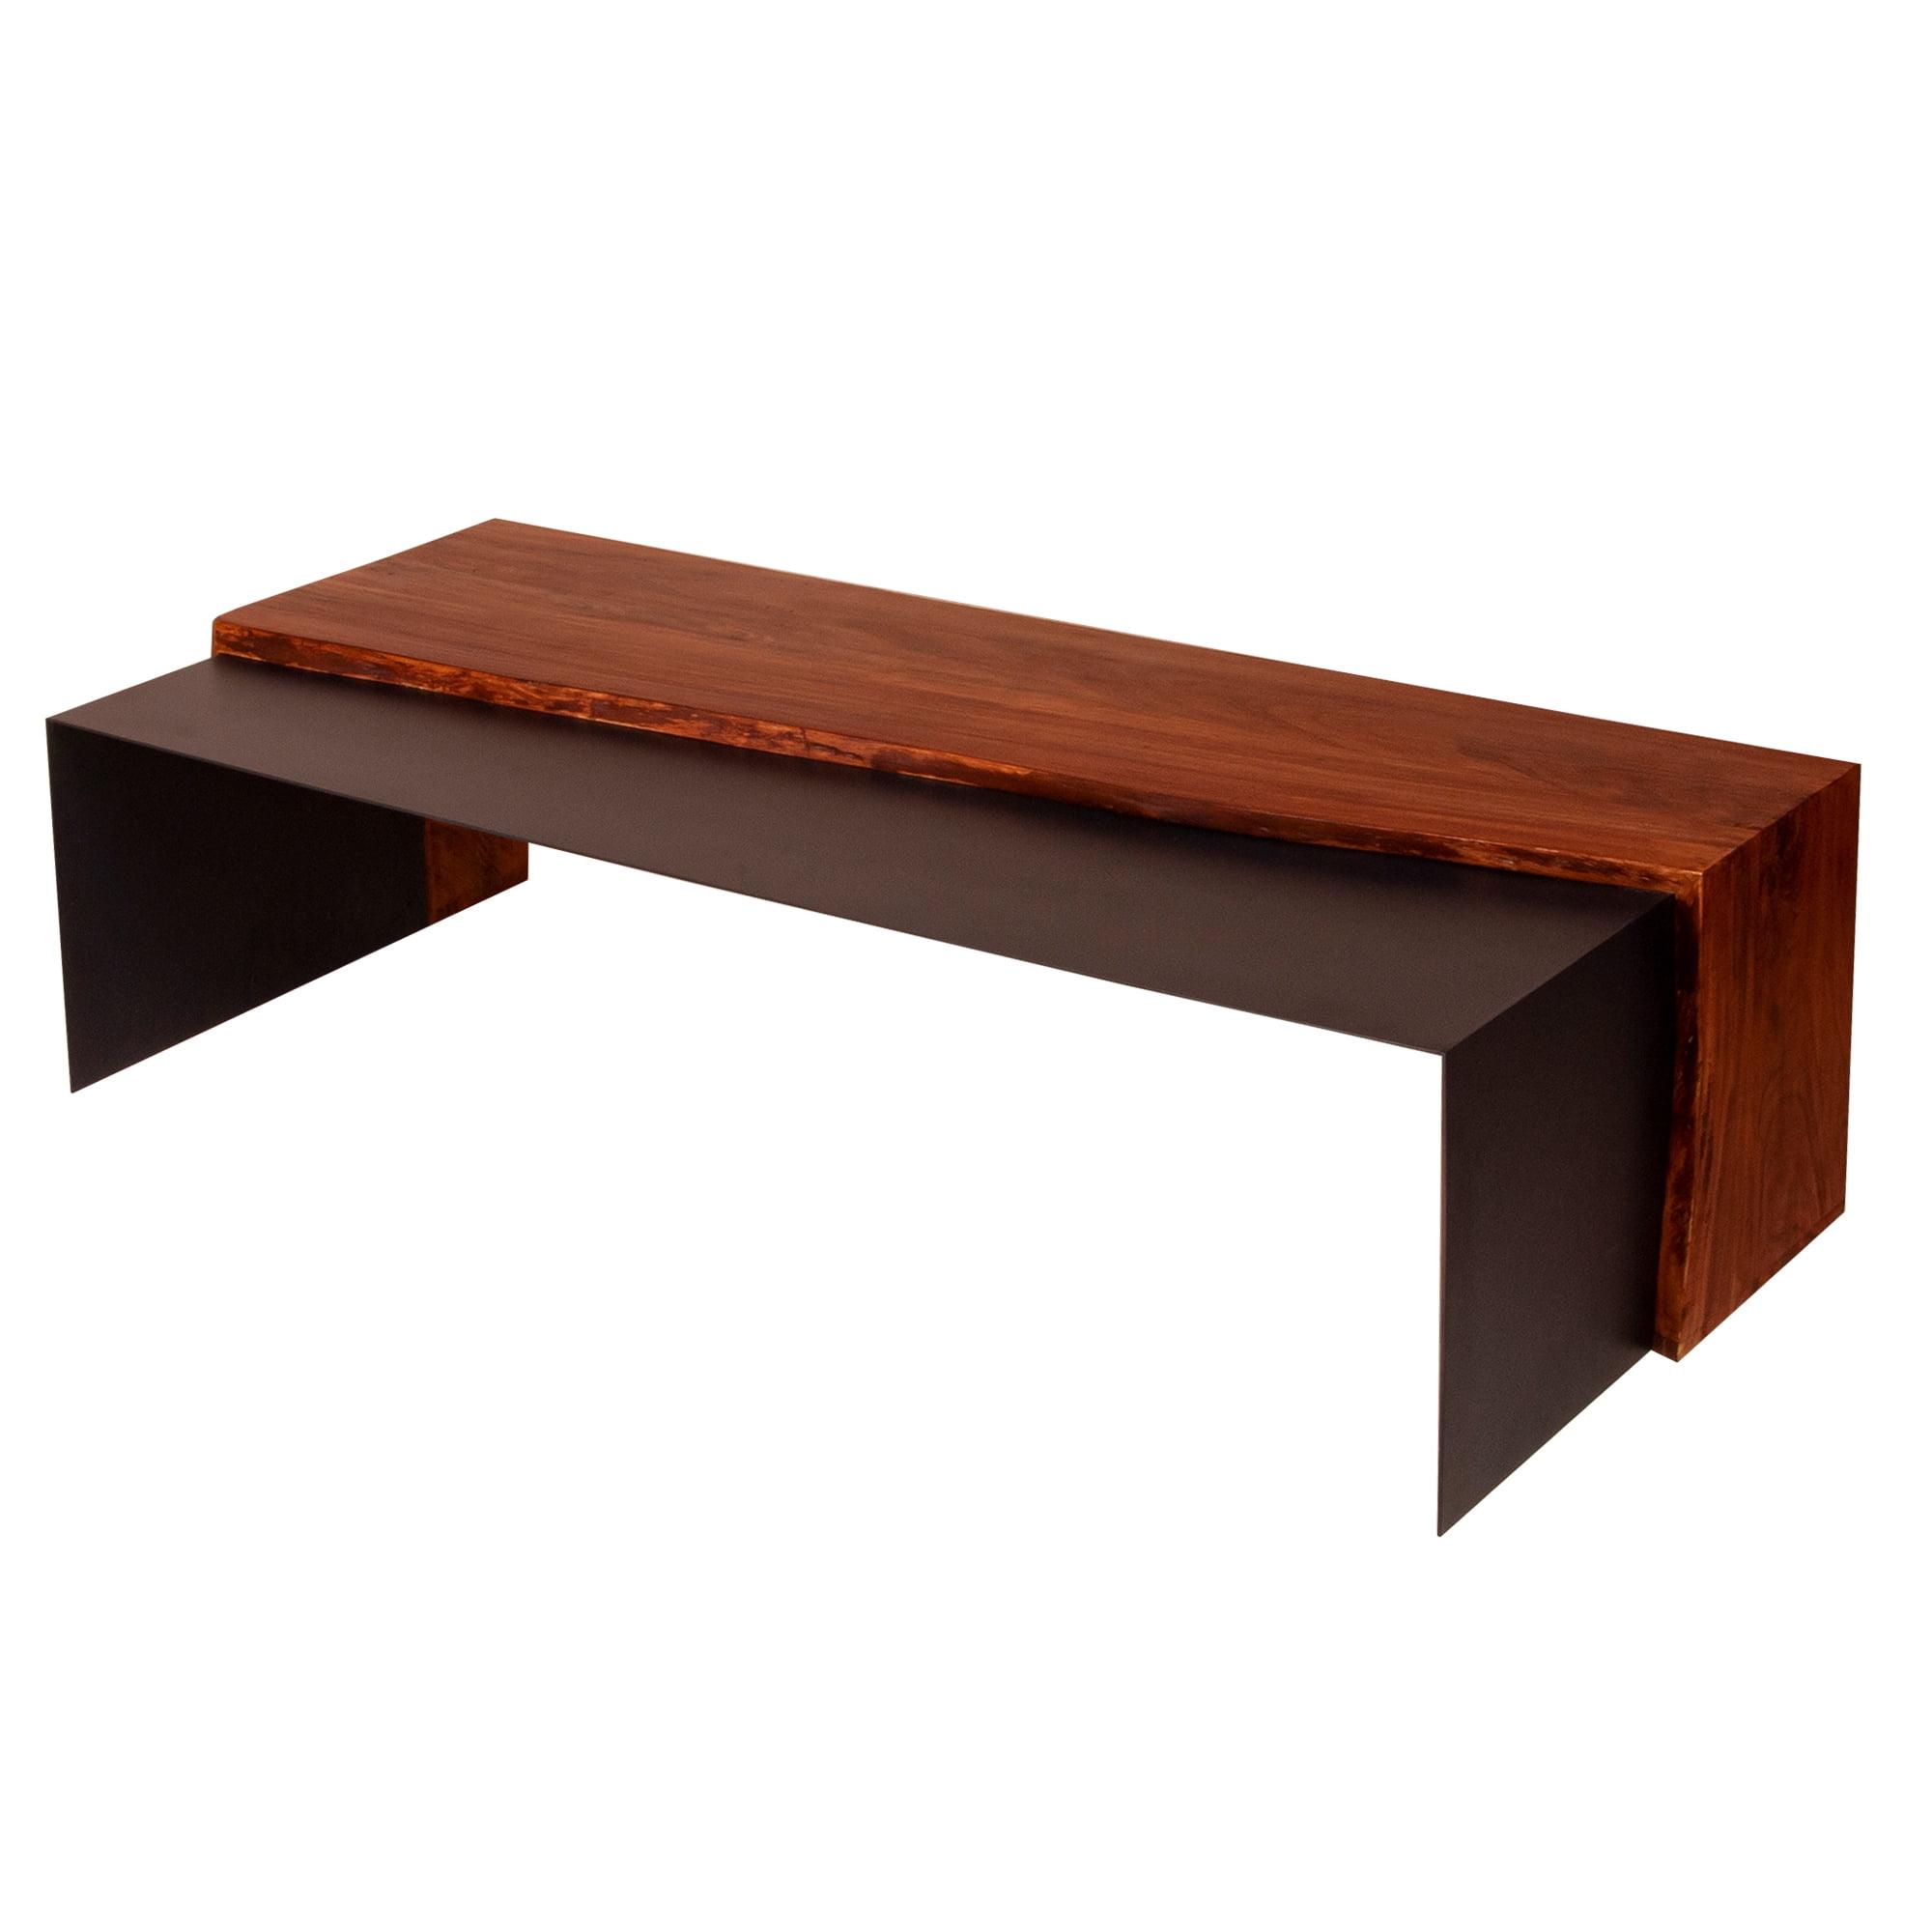 53" Acacia Wood & Metal Industrial Lift-Top Coffee Table, Oak & Black